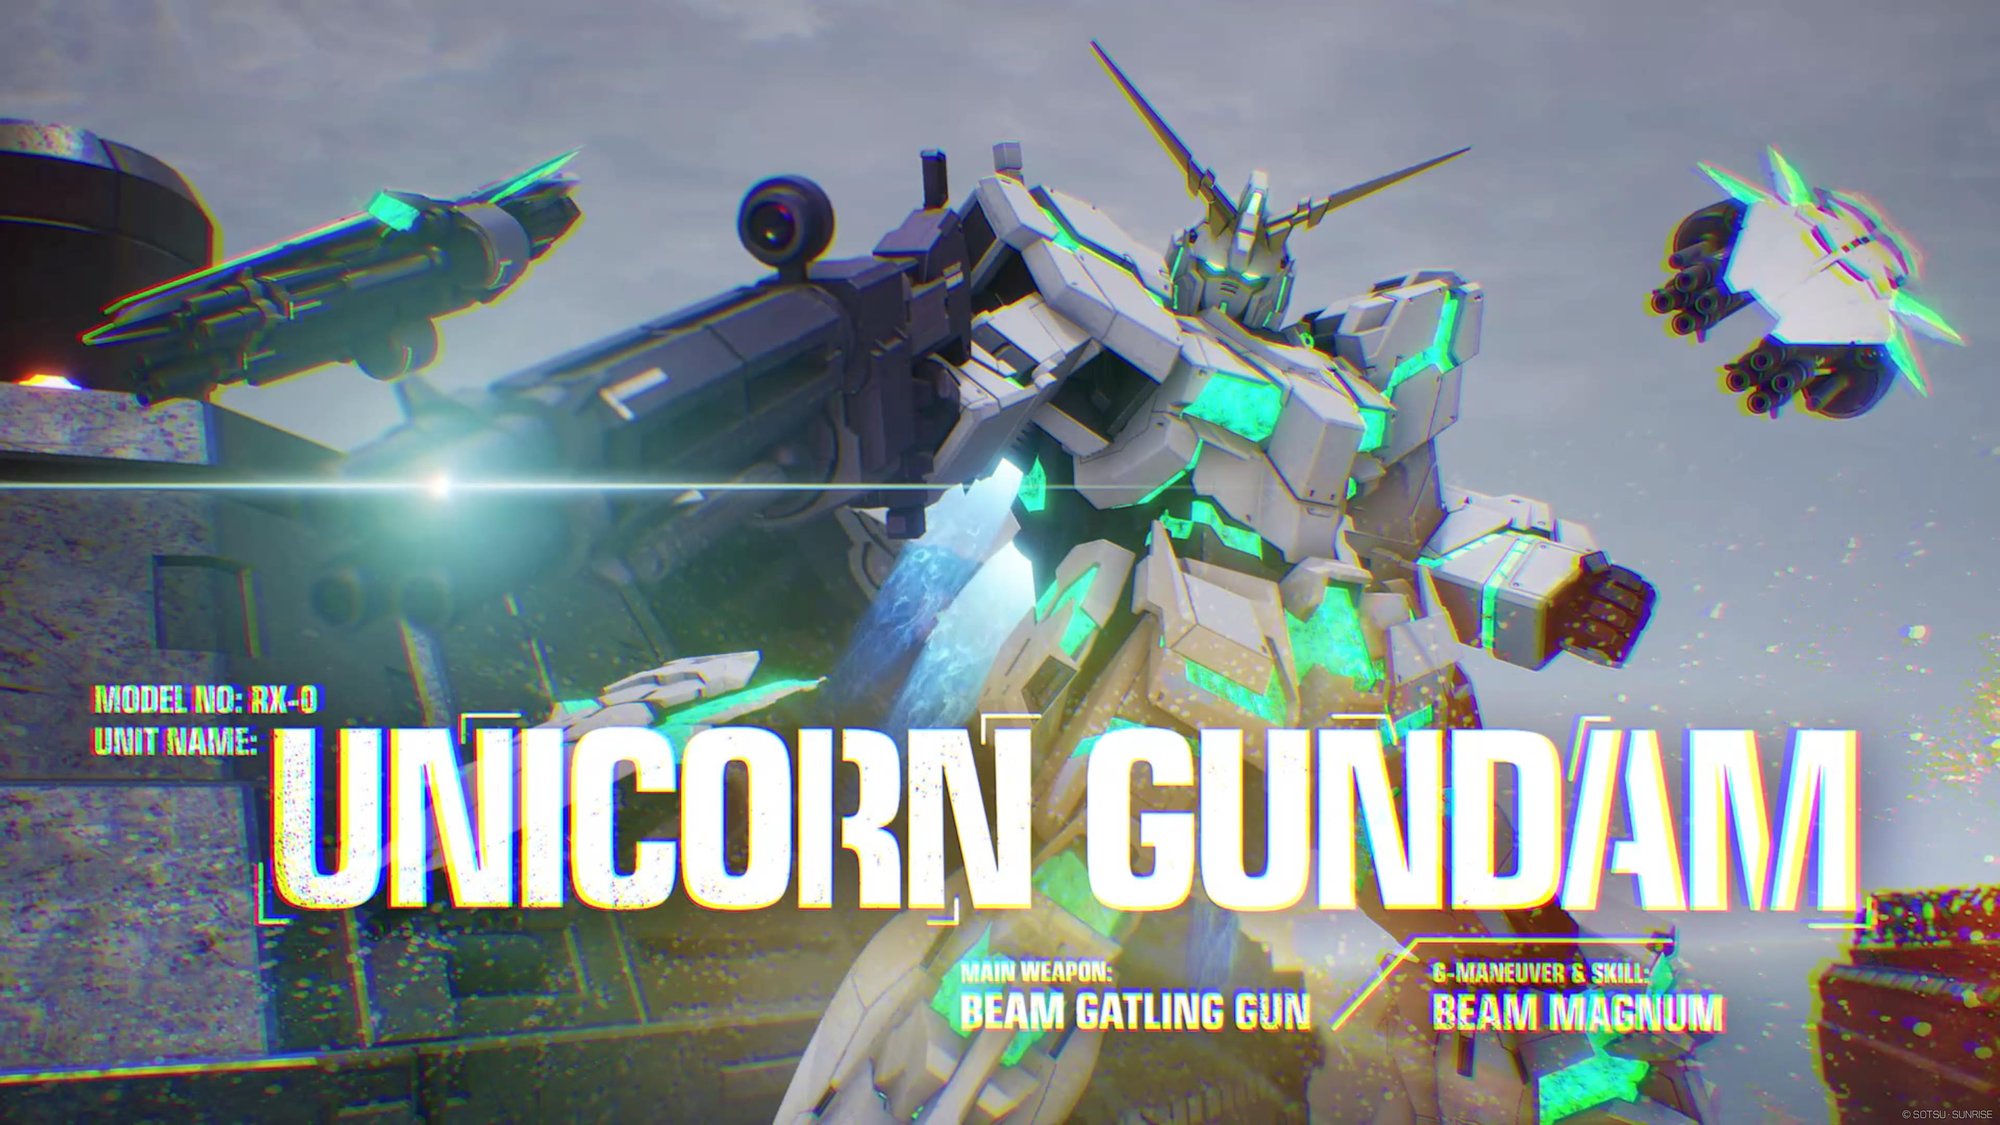 Unicorn Gundam